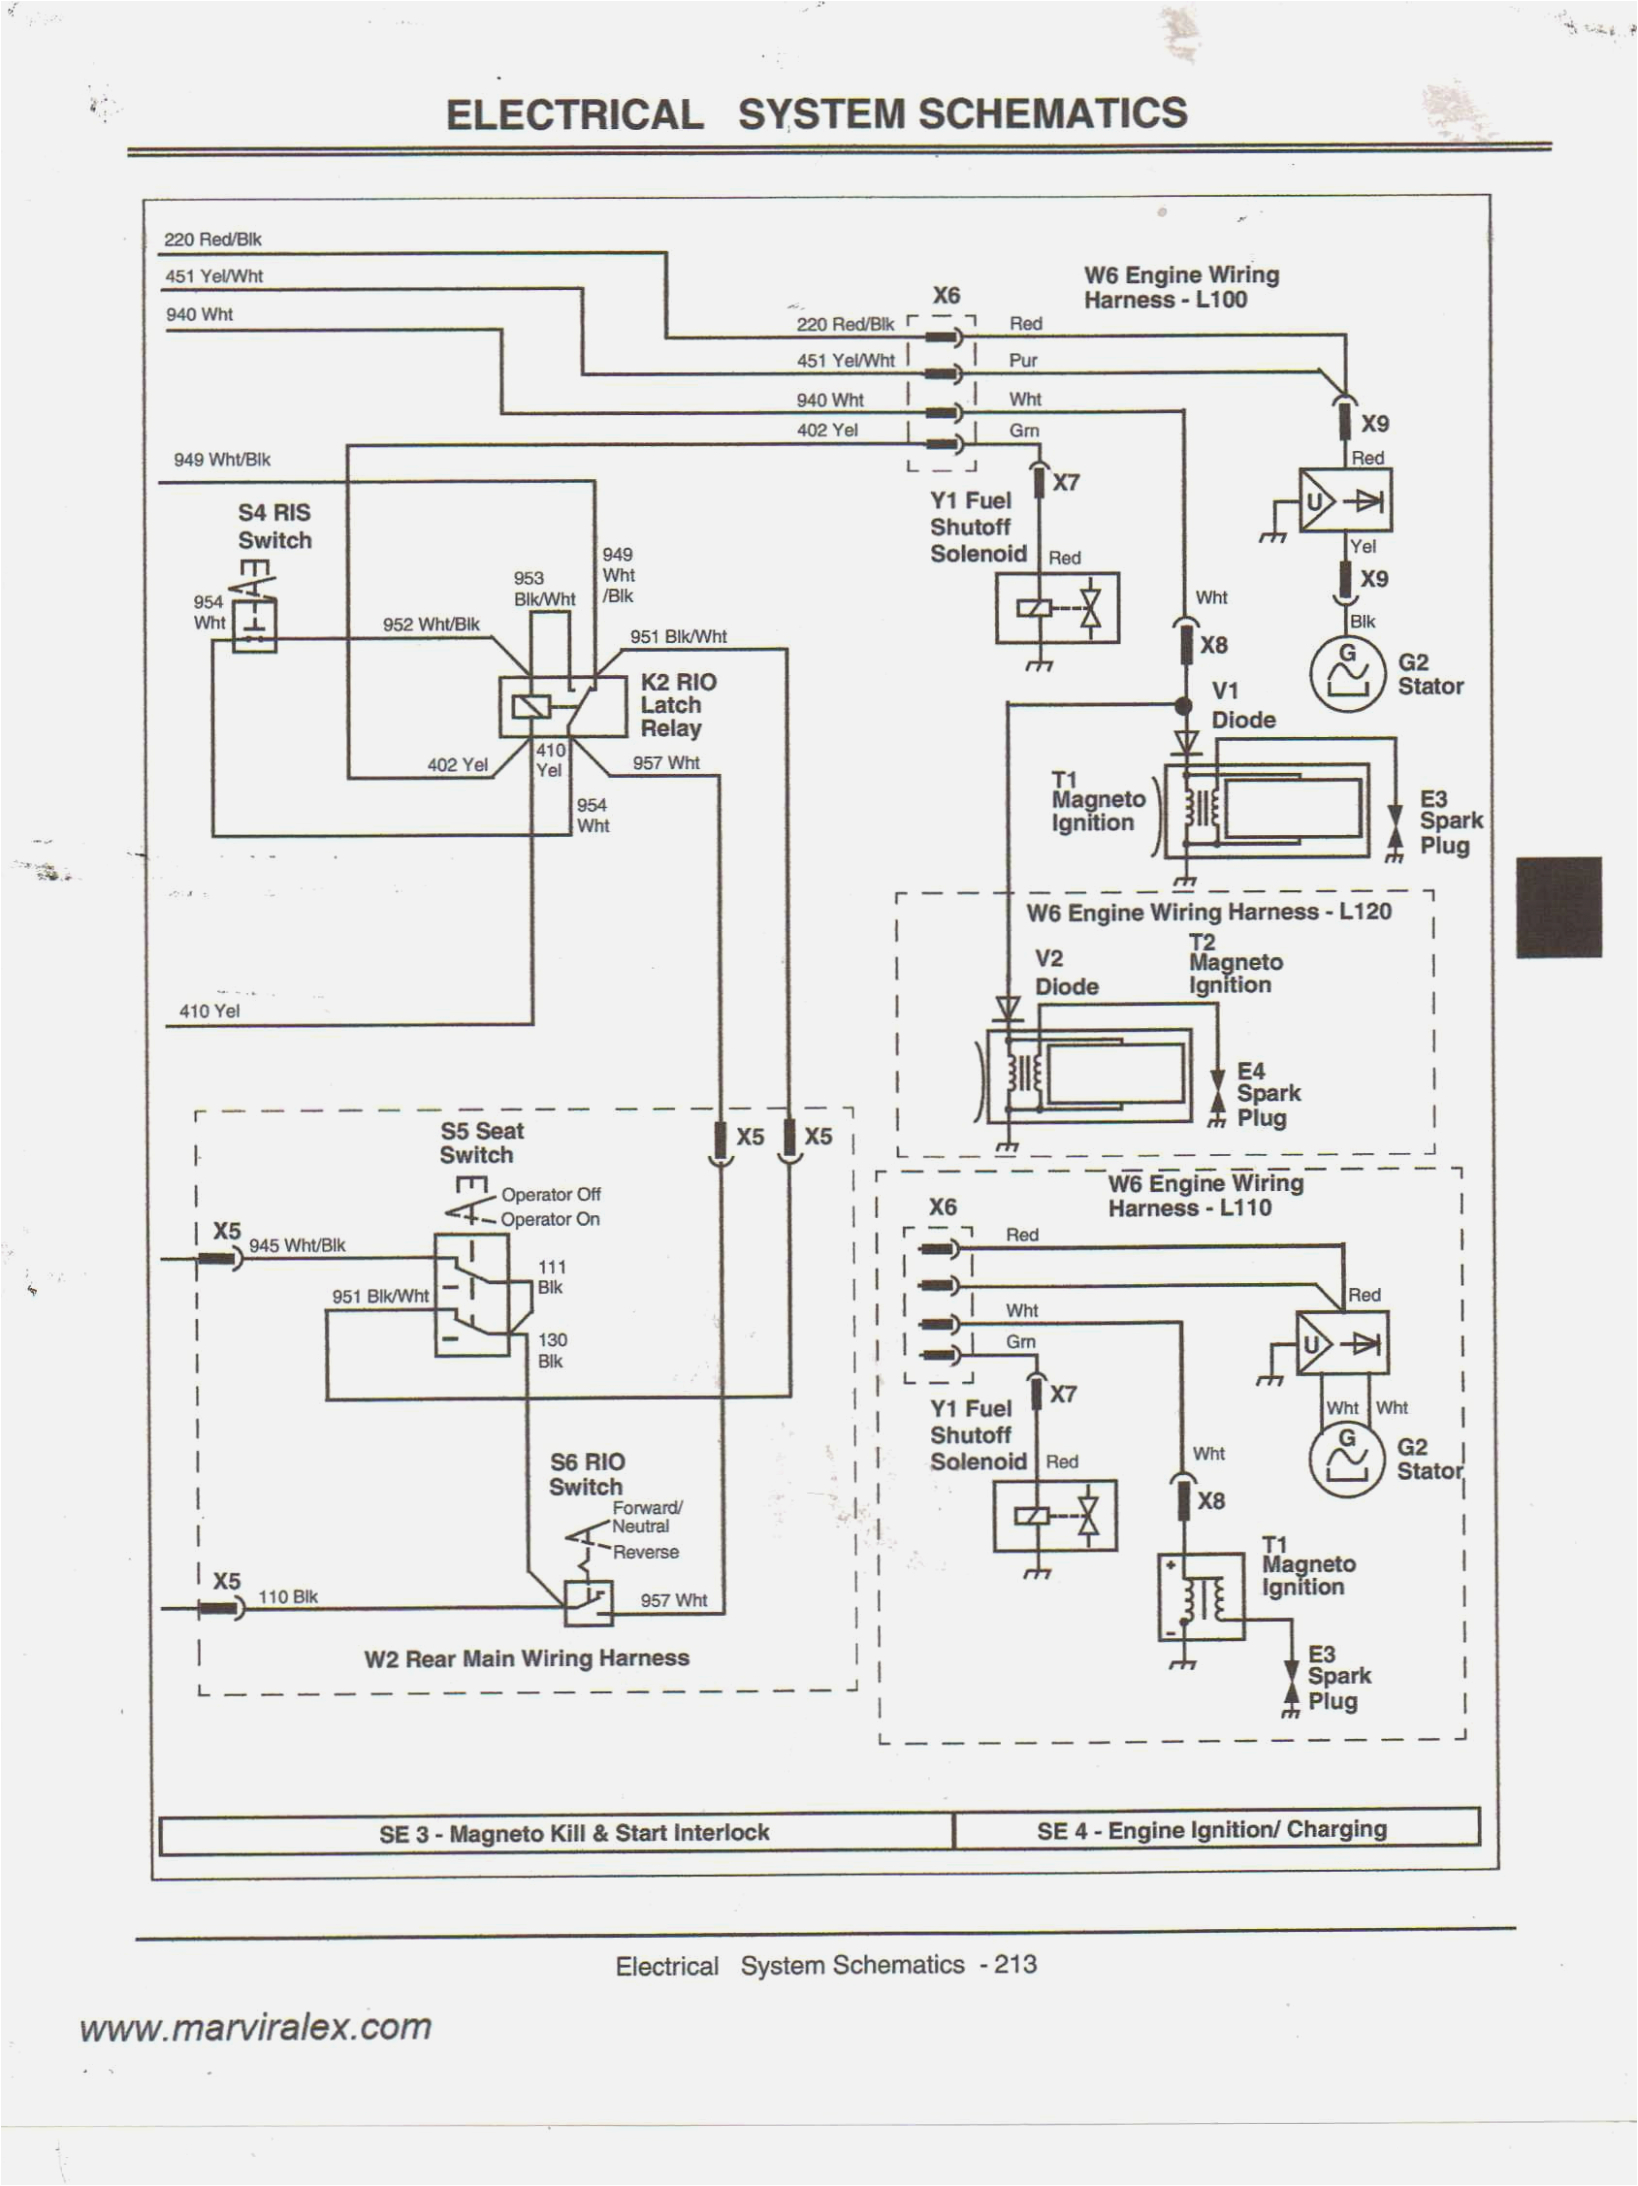 john deere x12 wiring diagram reference wiring diagram john deere john deere x320 wiring diagram png